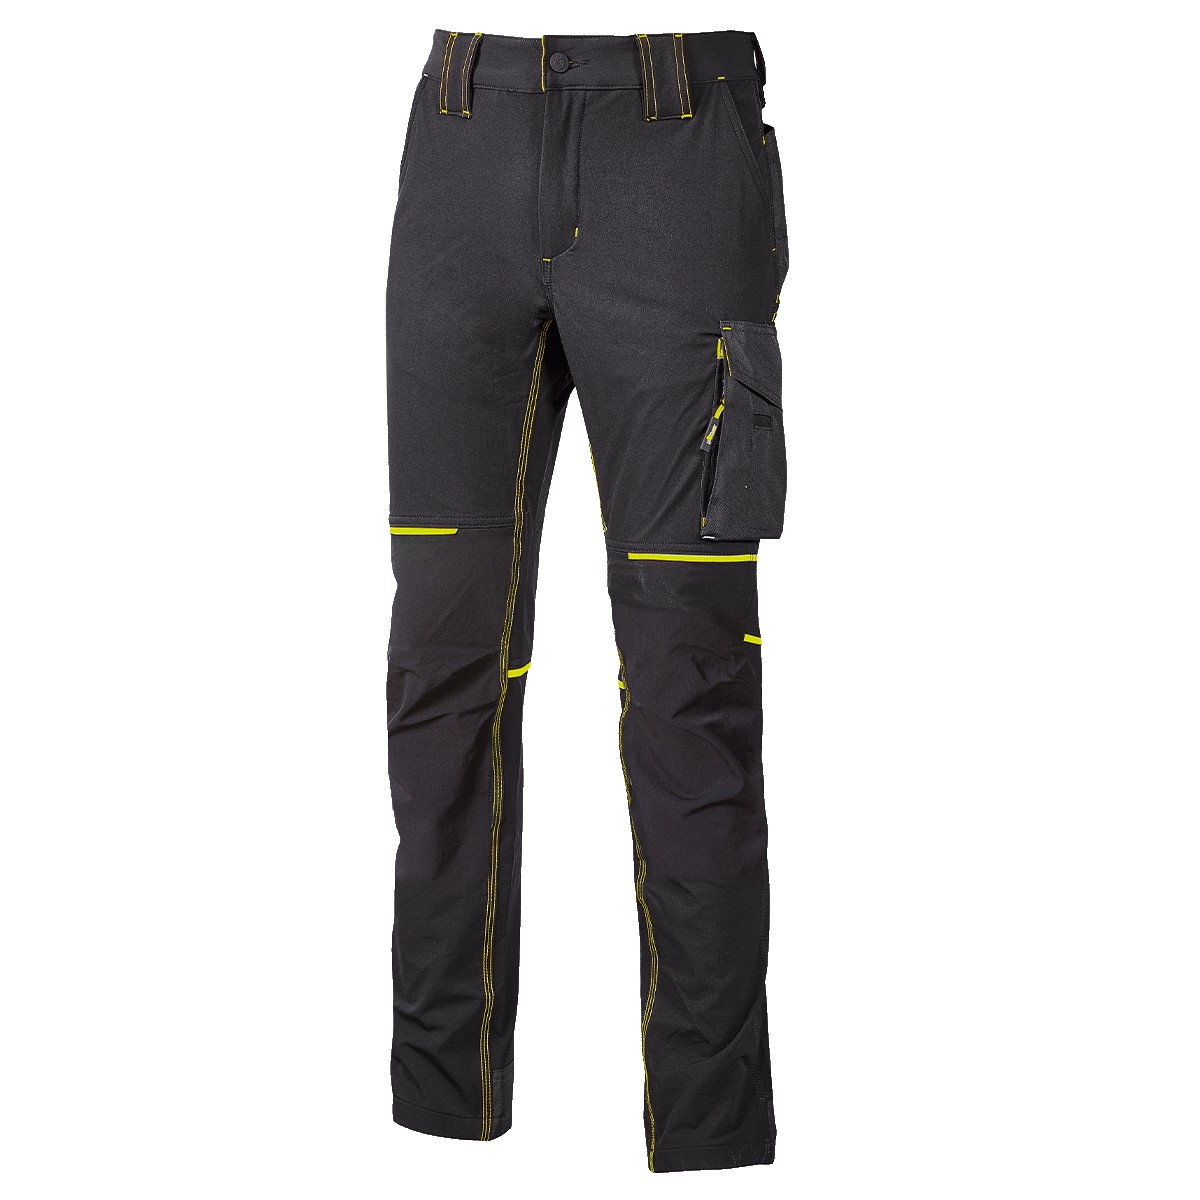 Pantalone U-Power World Slim Fit - Colore nero/giallo - Taglia XXL - 